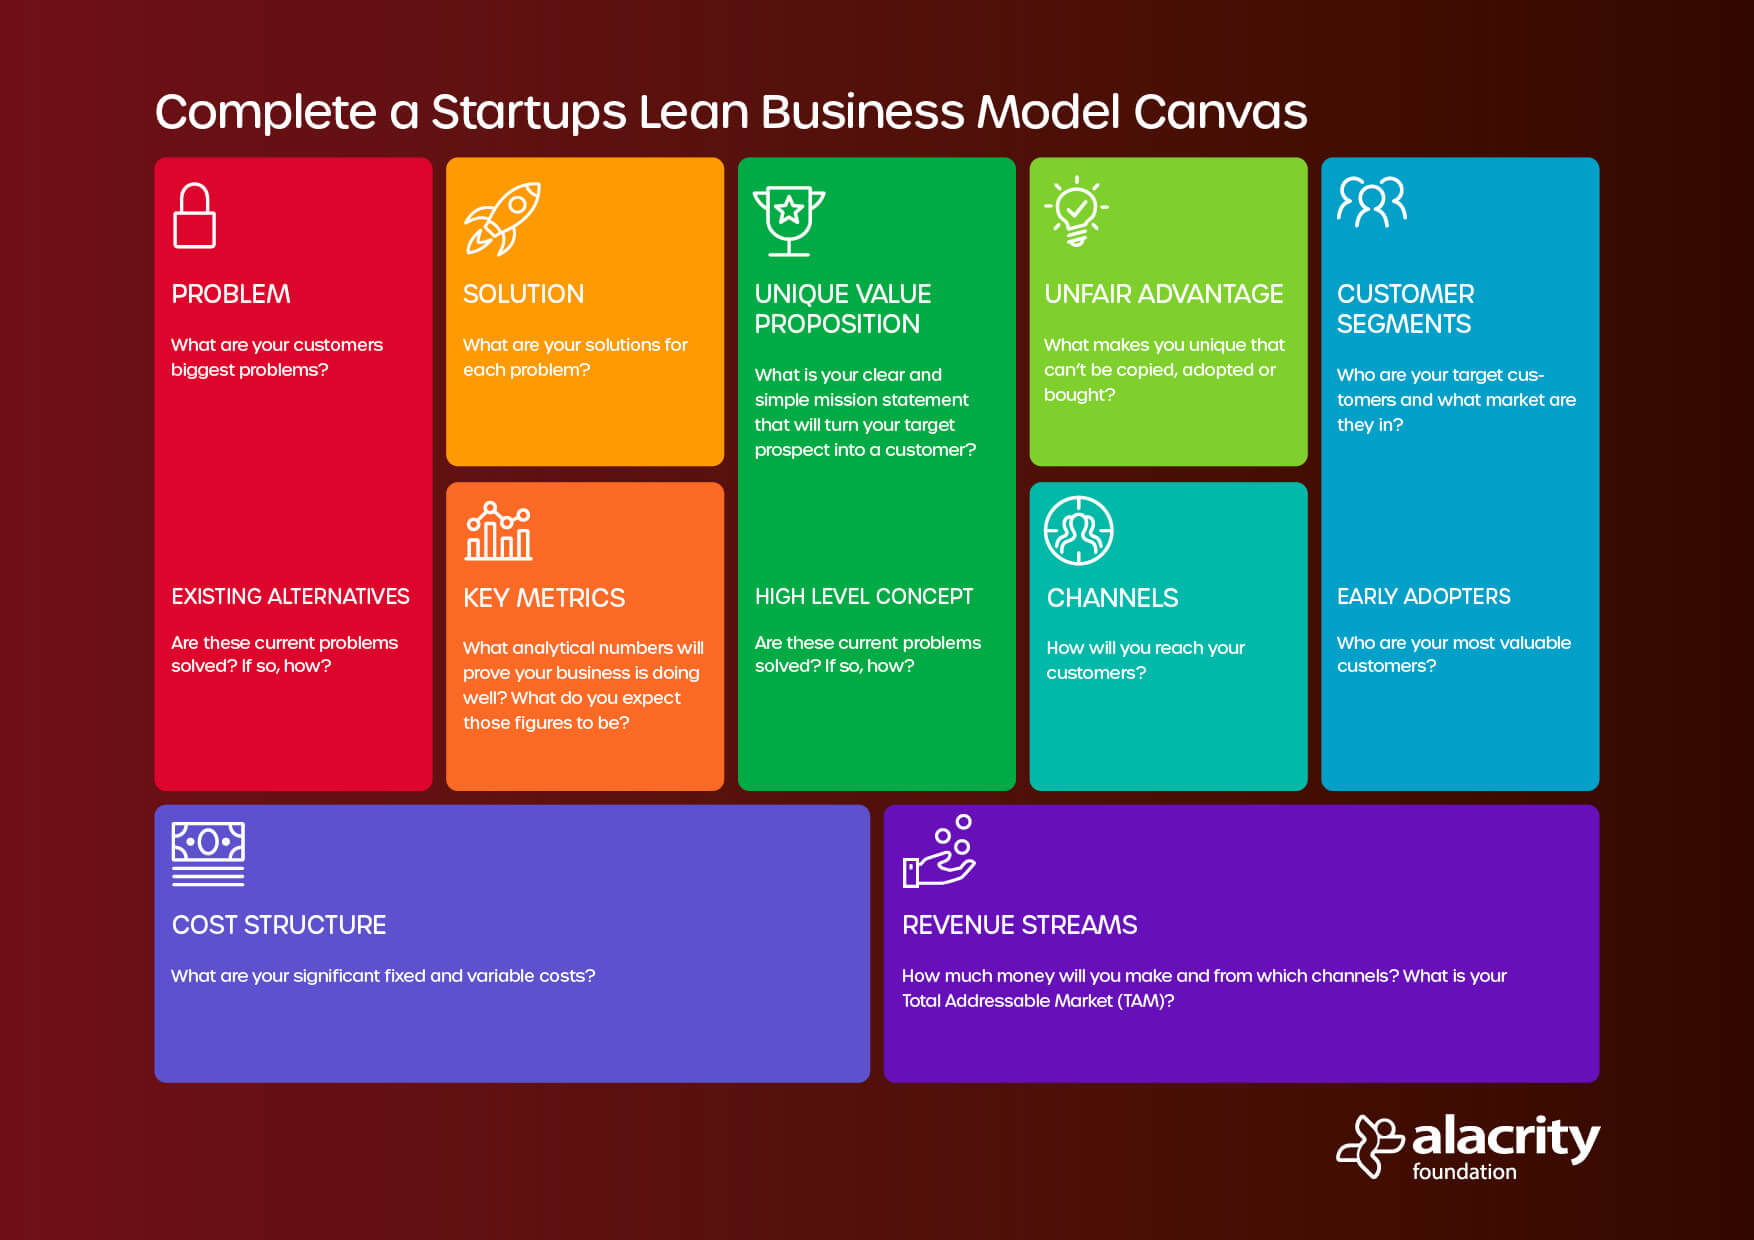 lean business model canvas